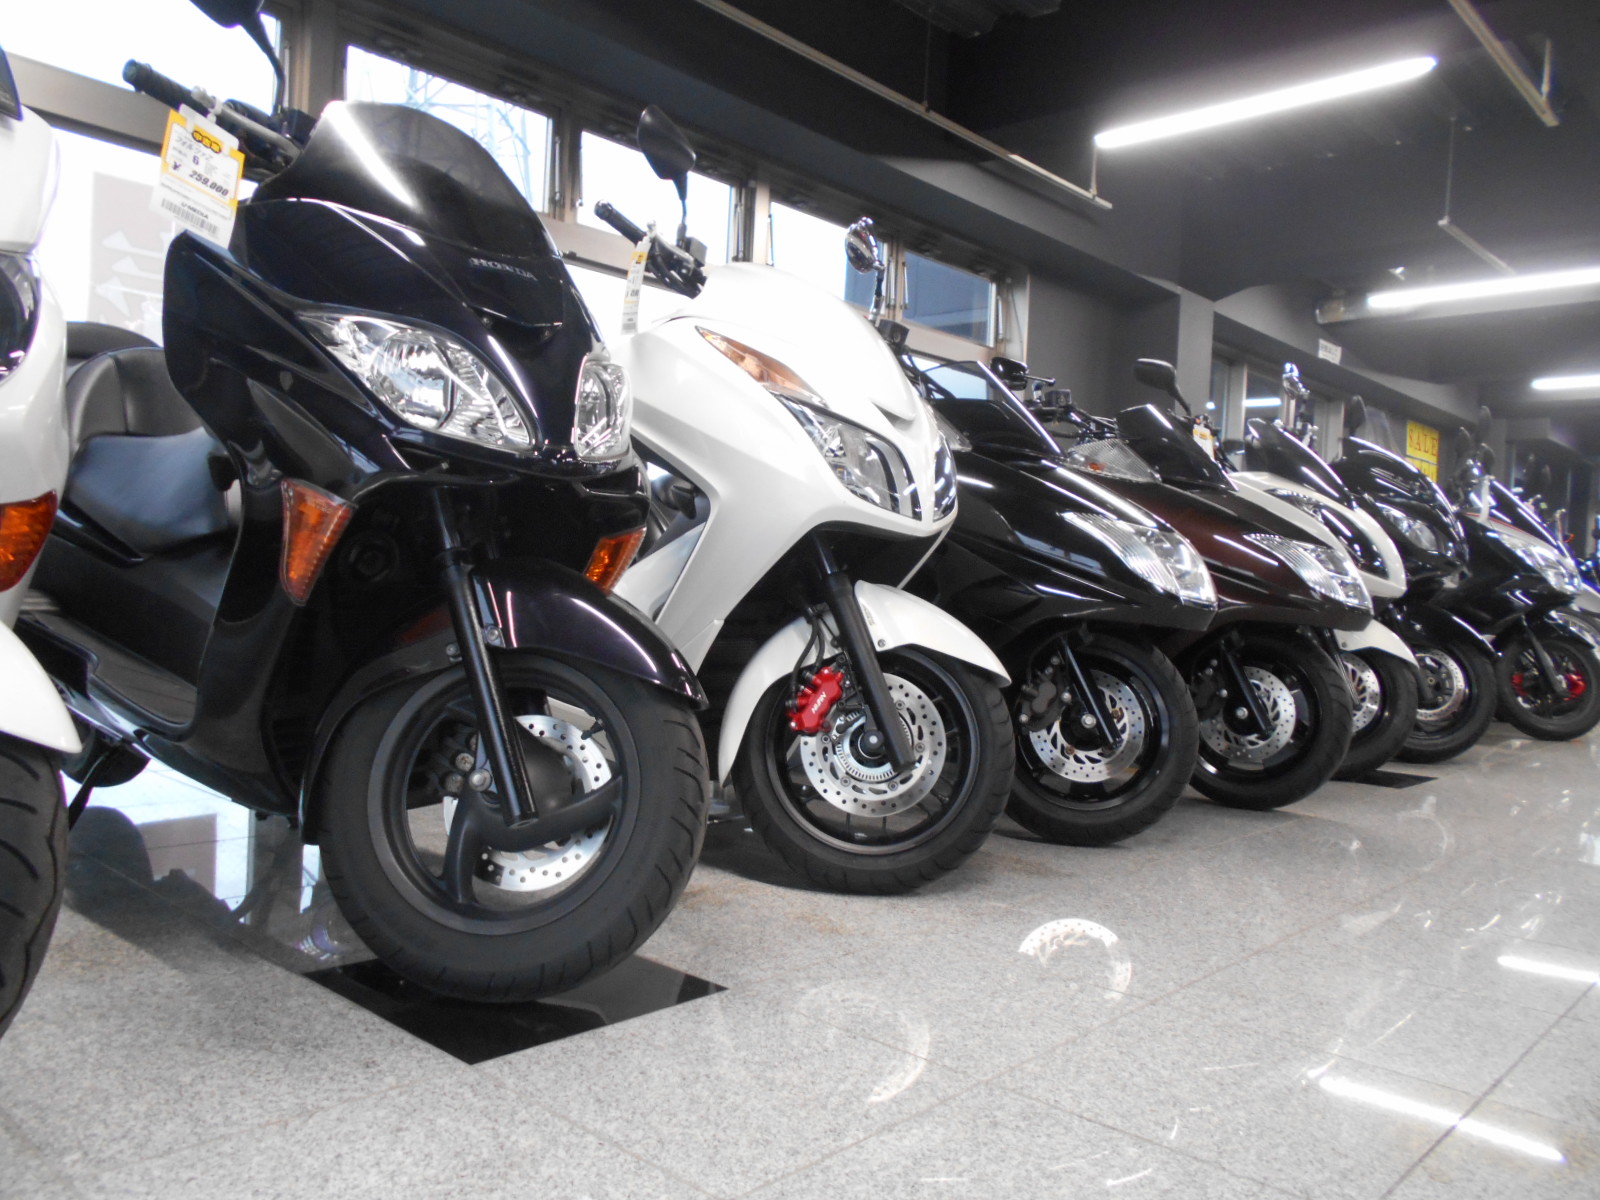 旧型250ccビッグスクーター揃っています 中古車 最新情報 U Media ユーメディア 中古 バイク 新車バイク探しの決定版 神奈川 東京でバイク探すならユーメディア